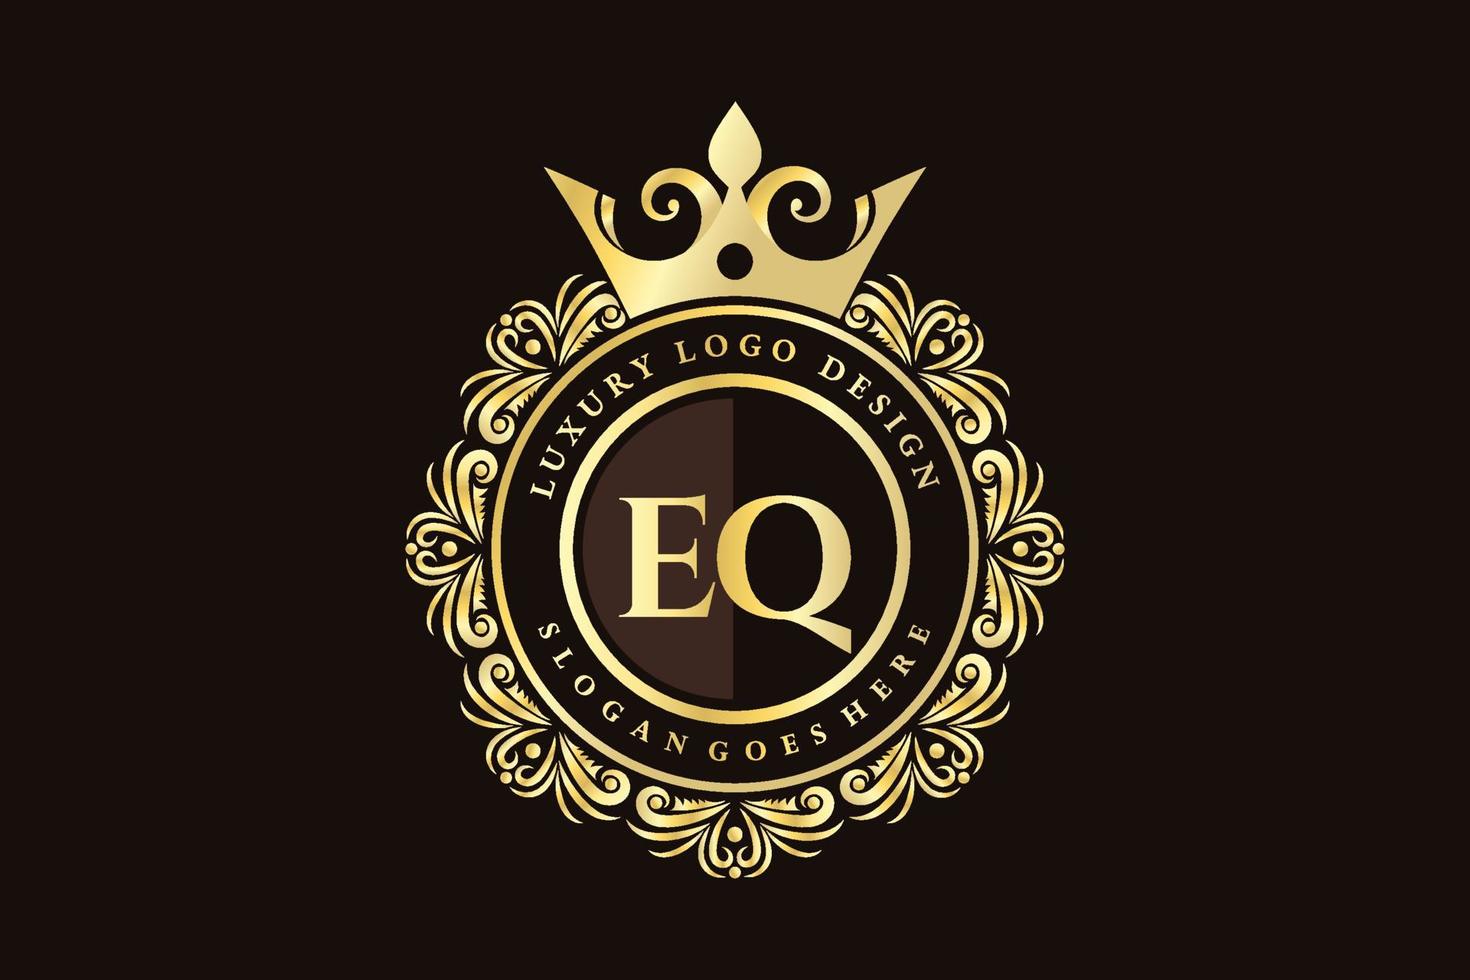 eq letra inicial ouro caligráfico feminino floral mão desenhada monograma heráldico antigo estilo vintage luxo design de logotipo vetor premium